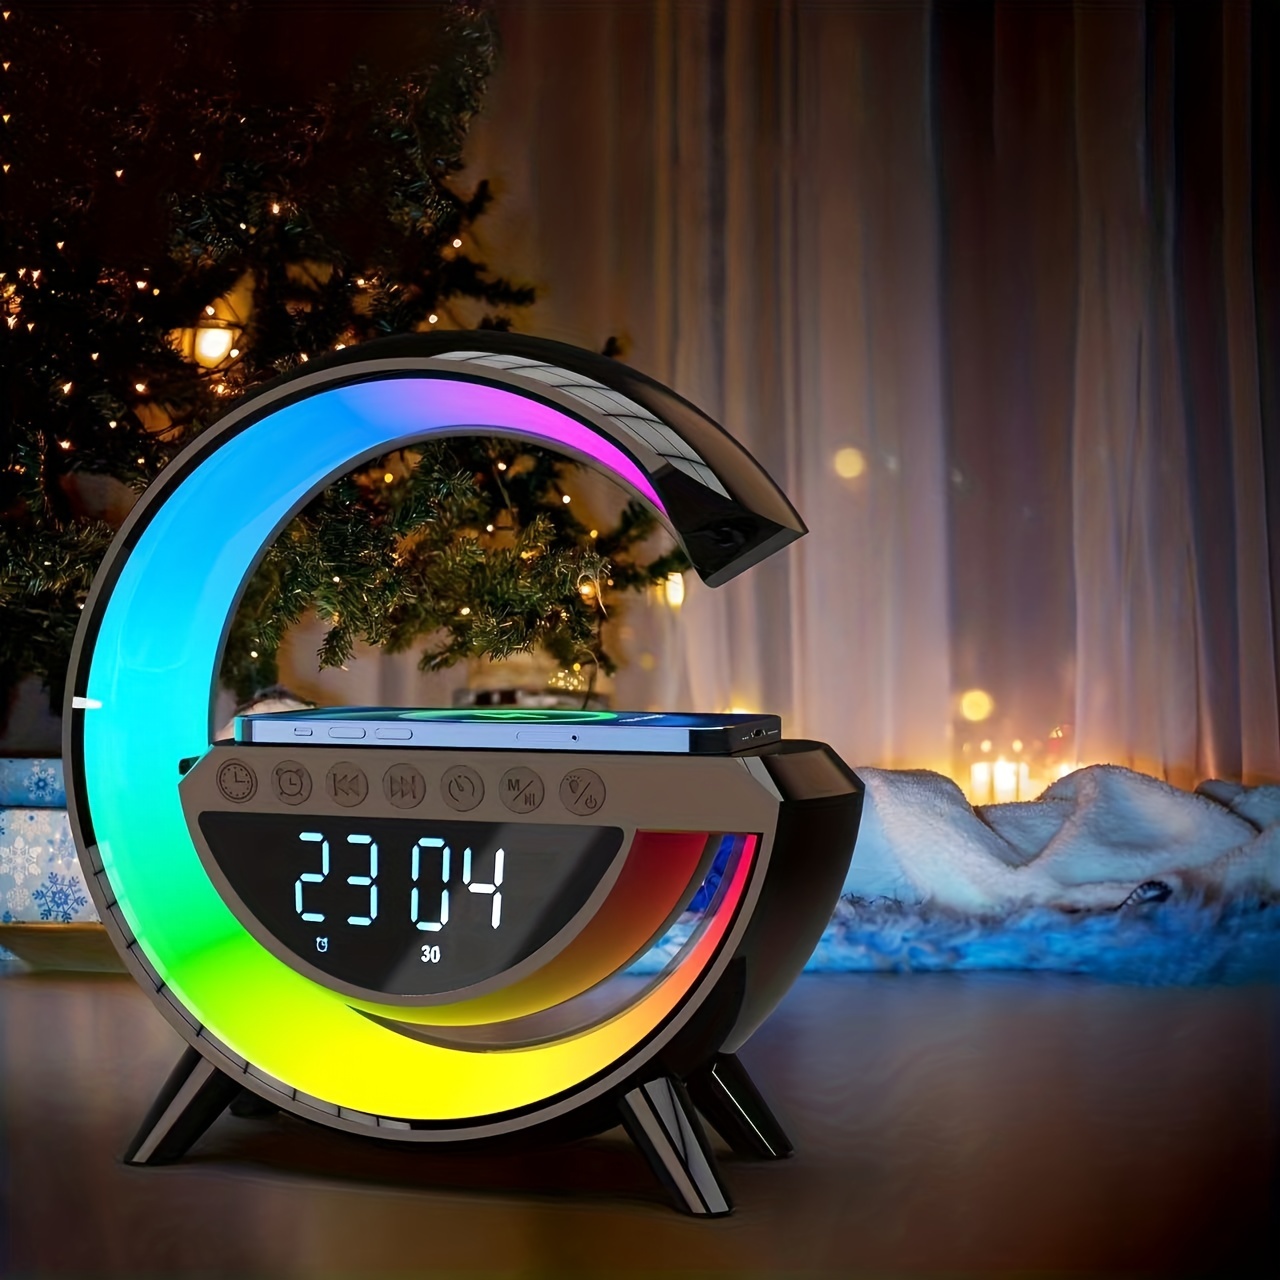  OrangeLight Reloj despertador con luz de amanecer con  simulación de amanecer y atardecer, 25 sonidos de naturaleza, 12 colores,  luz nocturna, alarmas duales y función de repetición, ayuda para dormir 